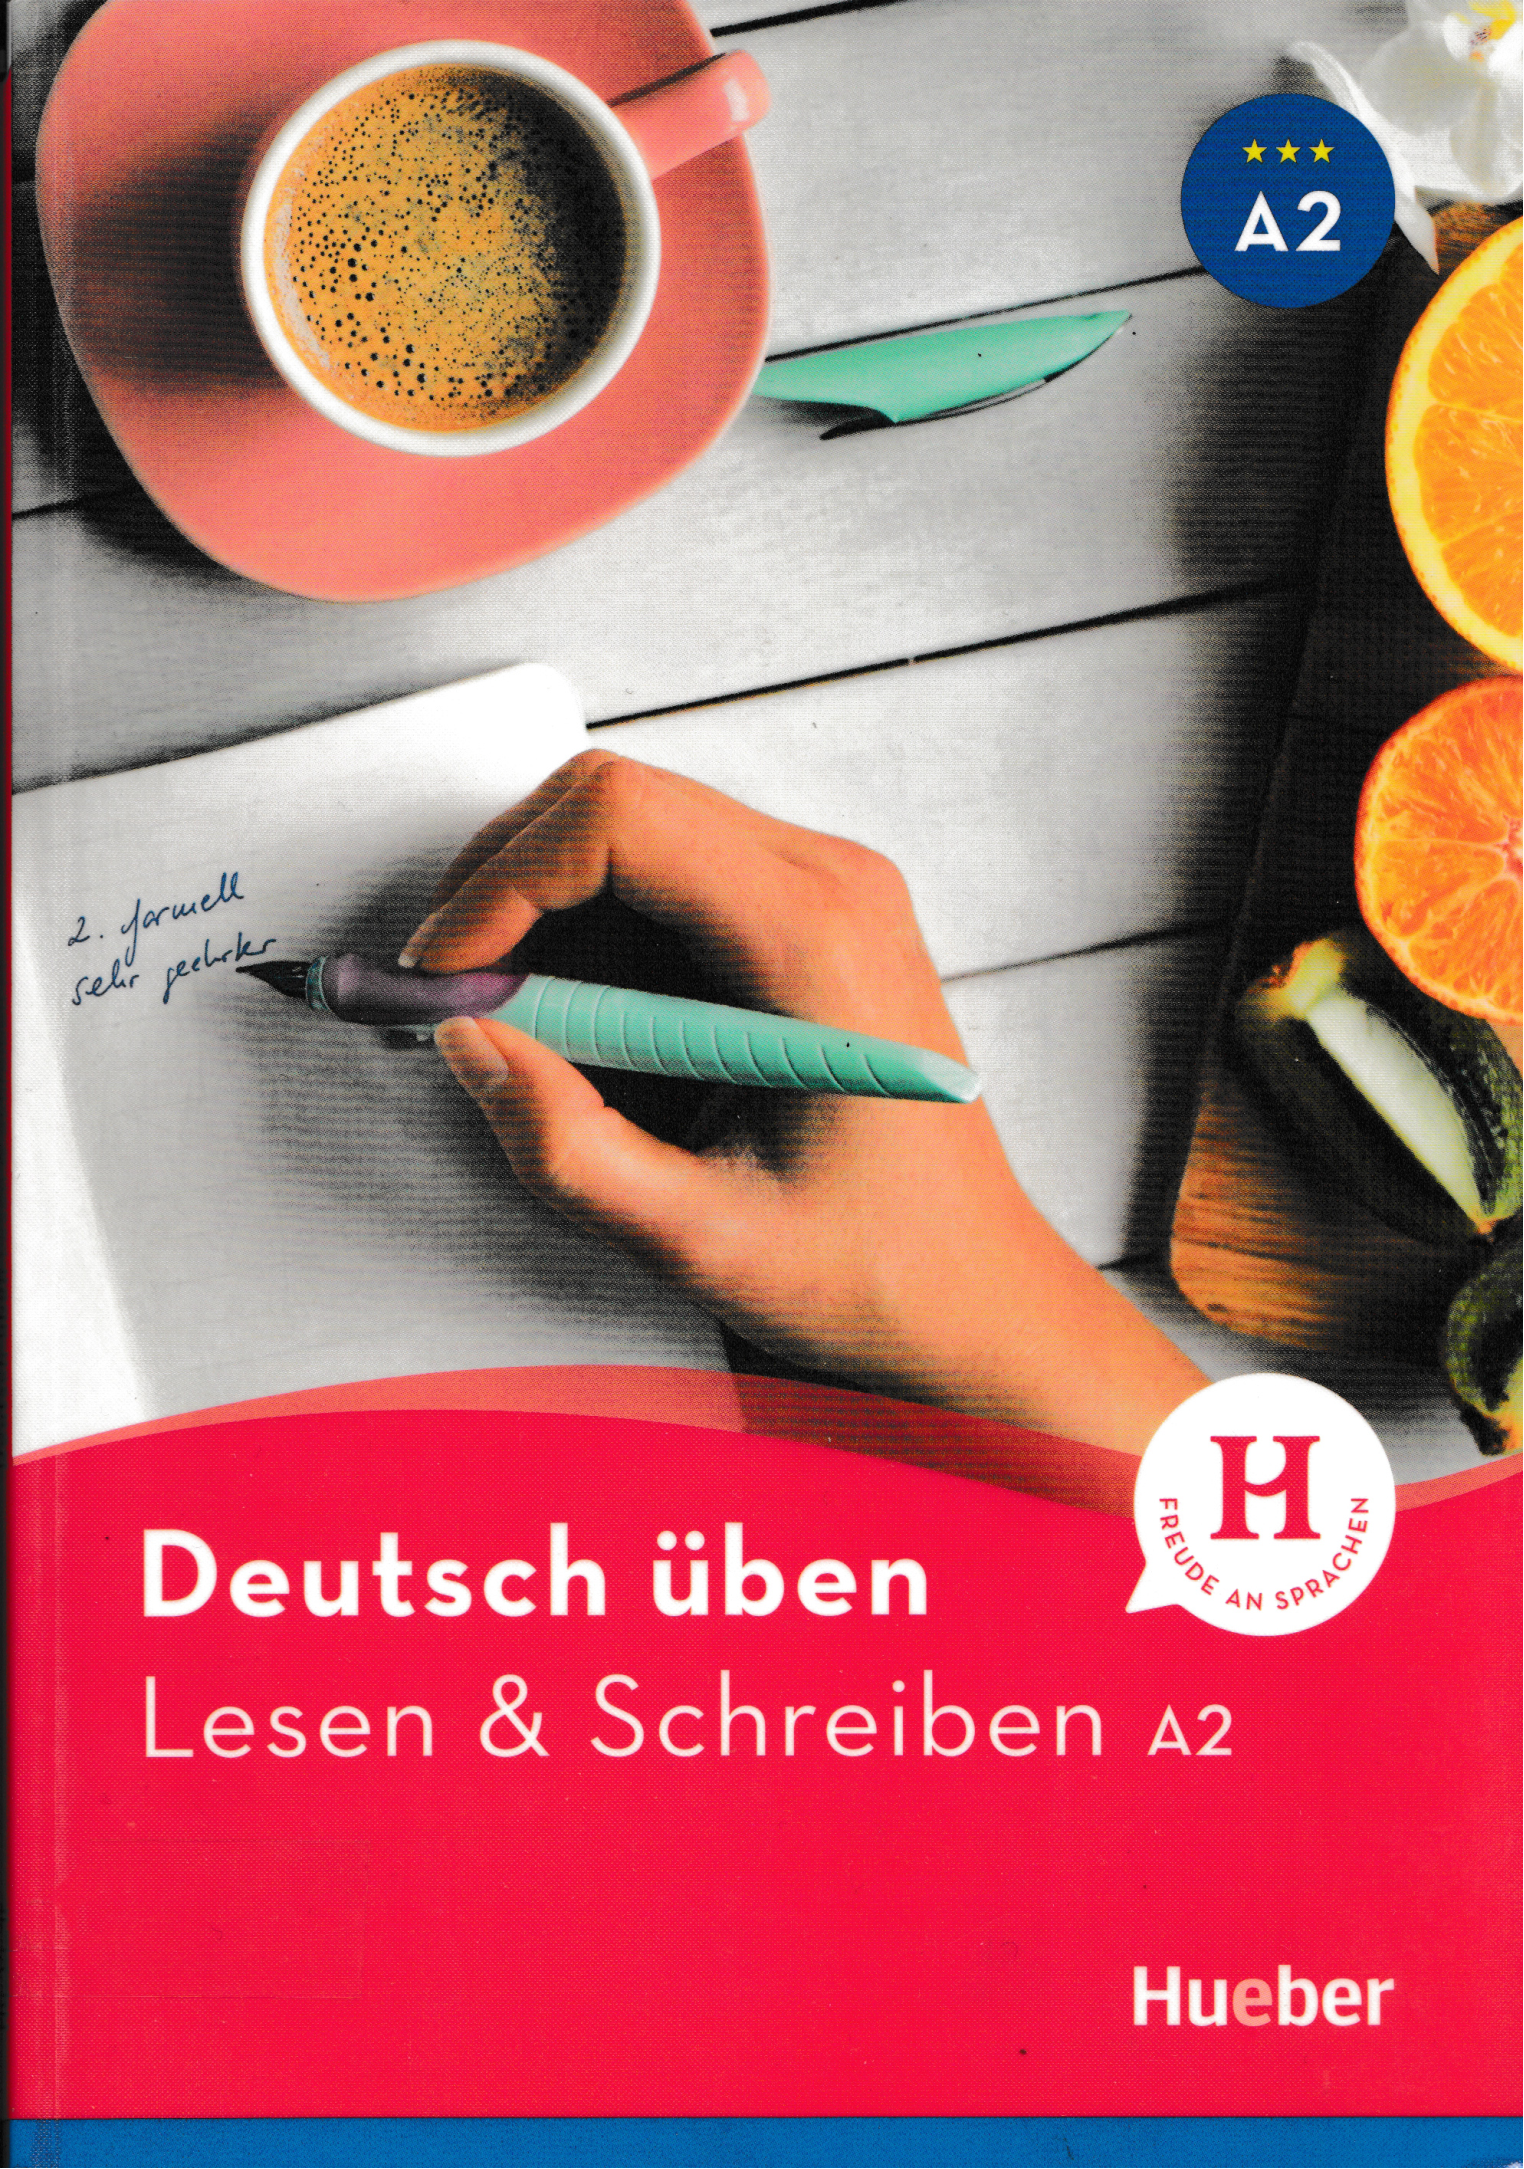 Rich Results on Google's SERP when searching for 'Deutsch üben Lesen & Schreiben A2 Buch-Hueber Verlag (2018)'